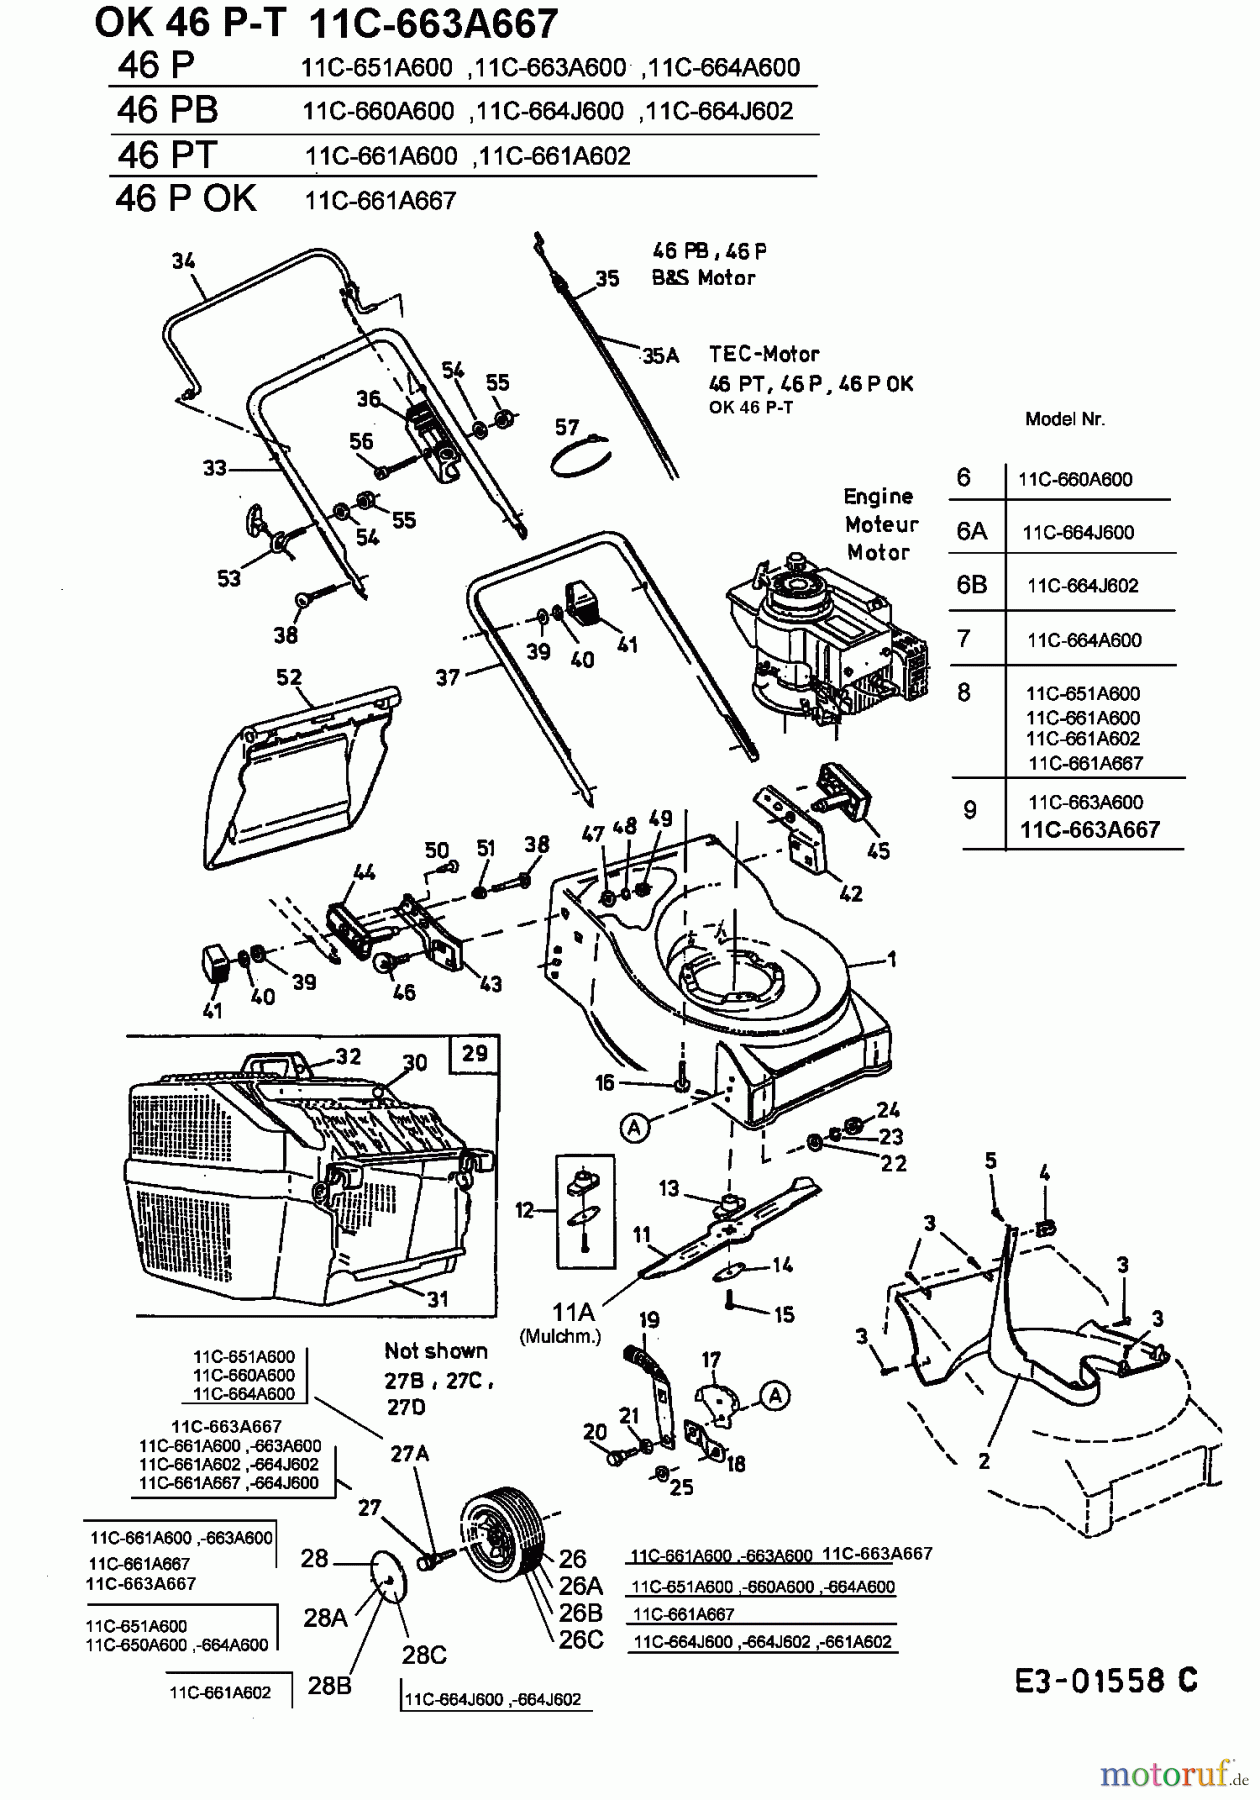  MTD Tondeuse thermique 46 PT 11C-661A602  (2003) Machine de base